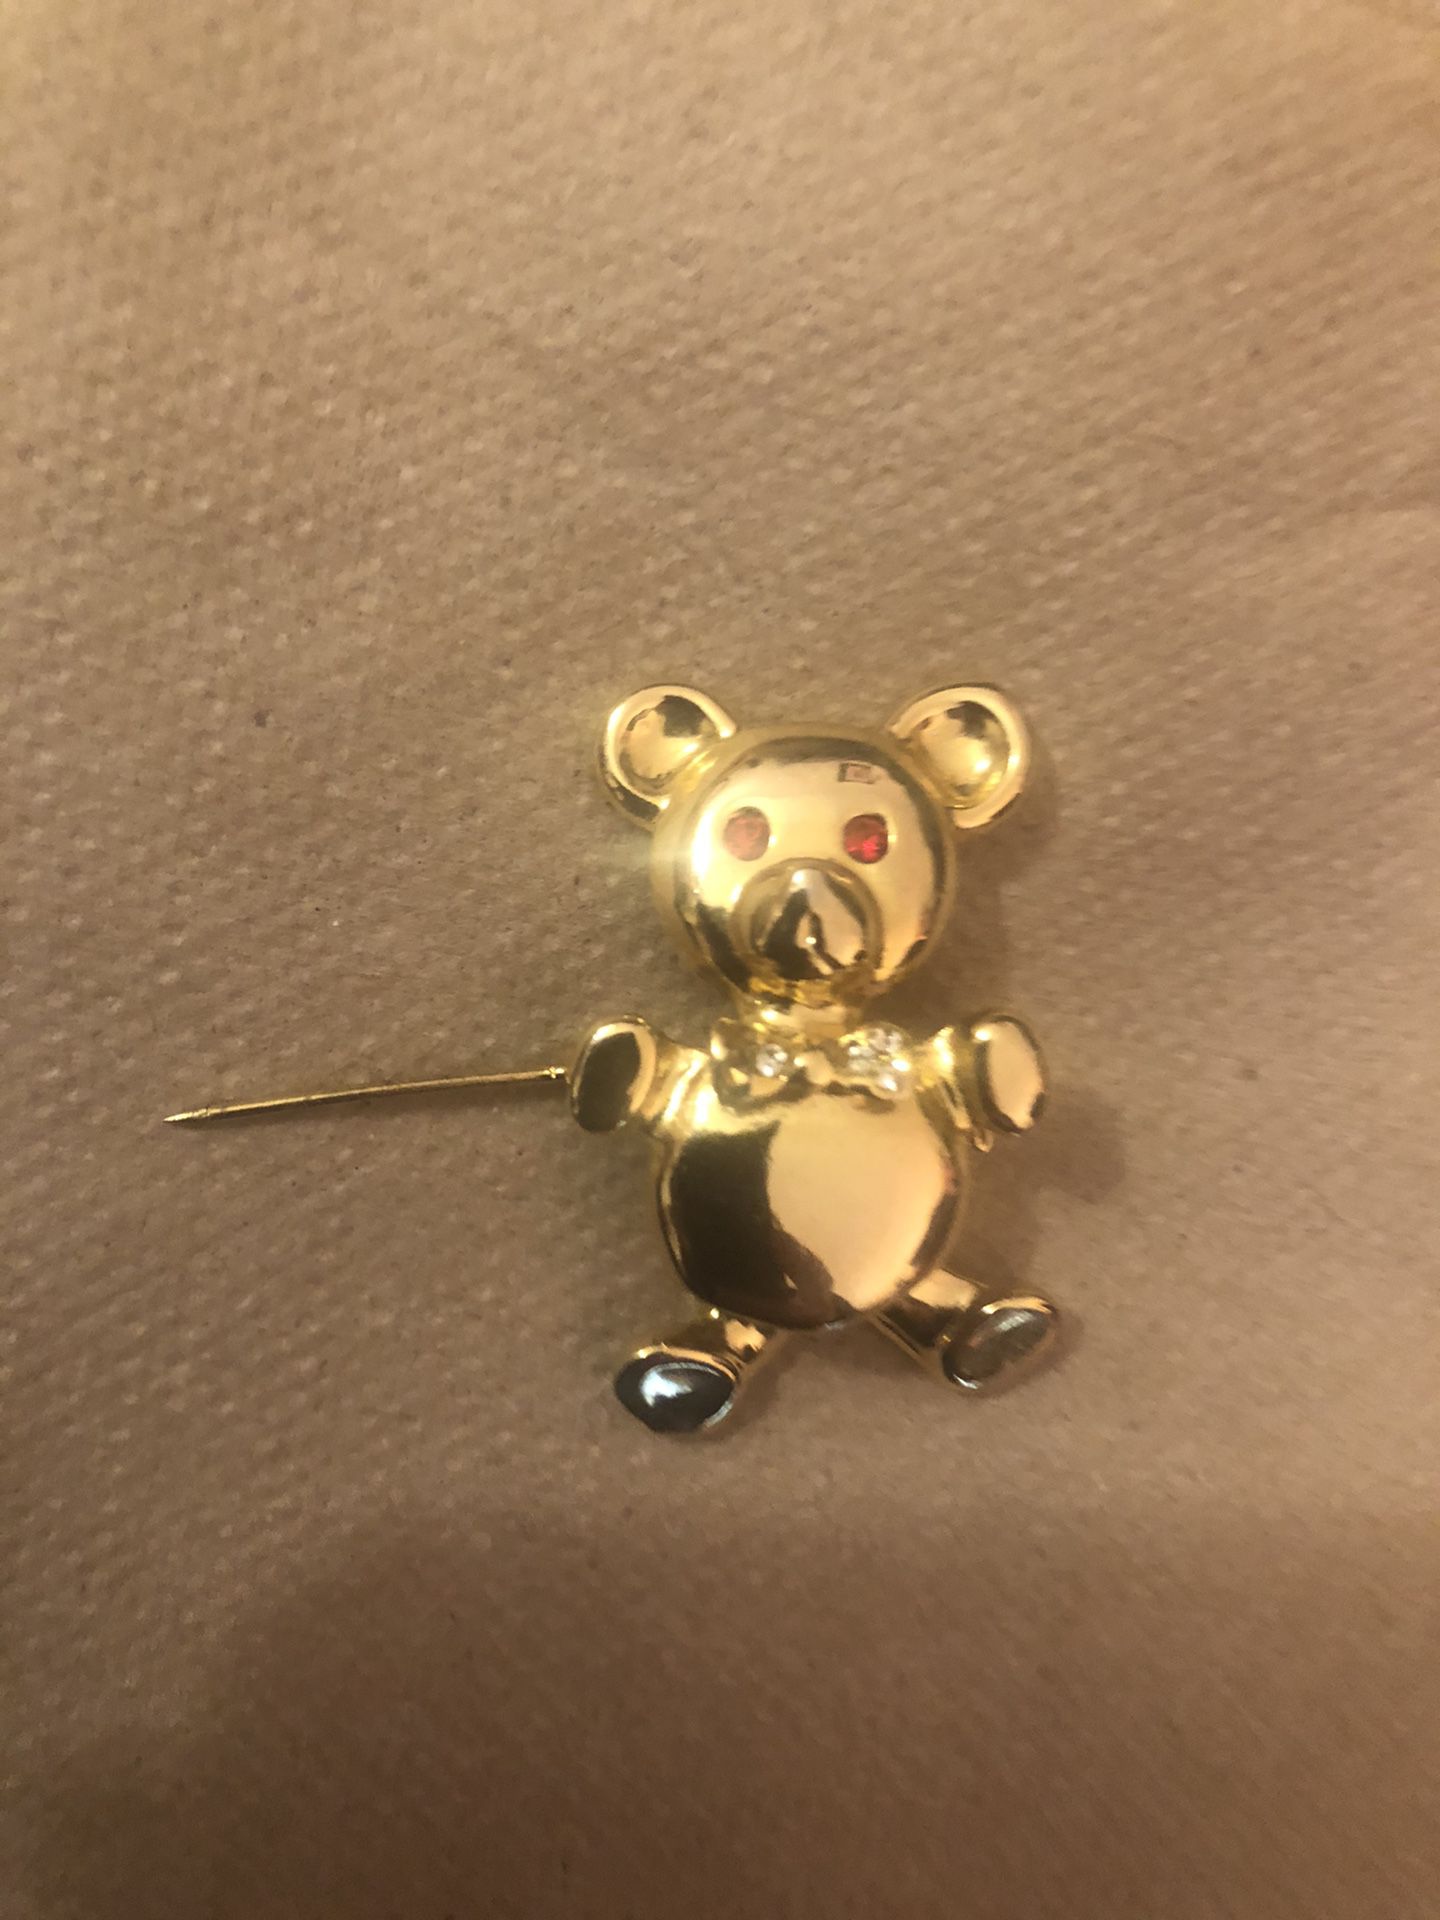 Teddy bear broach